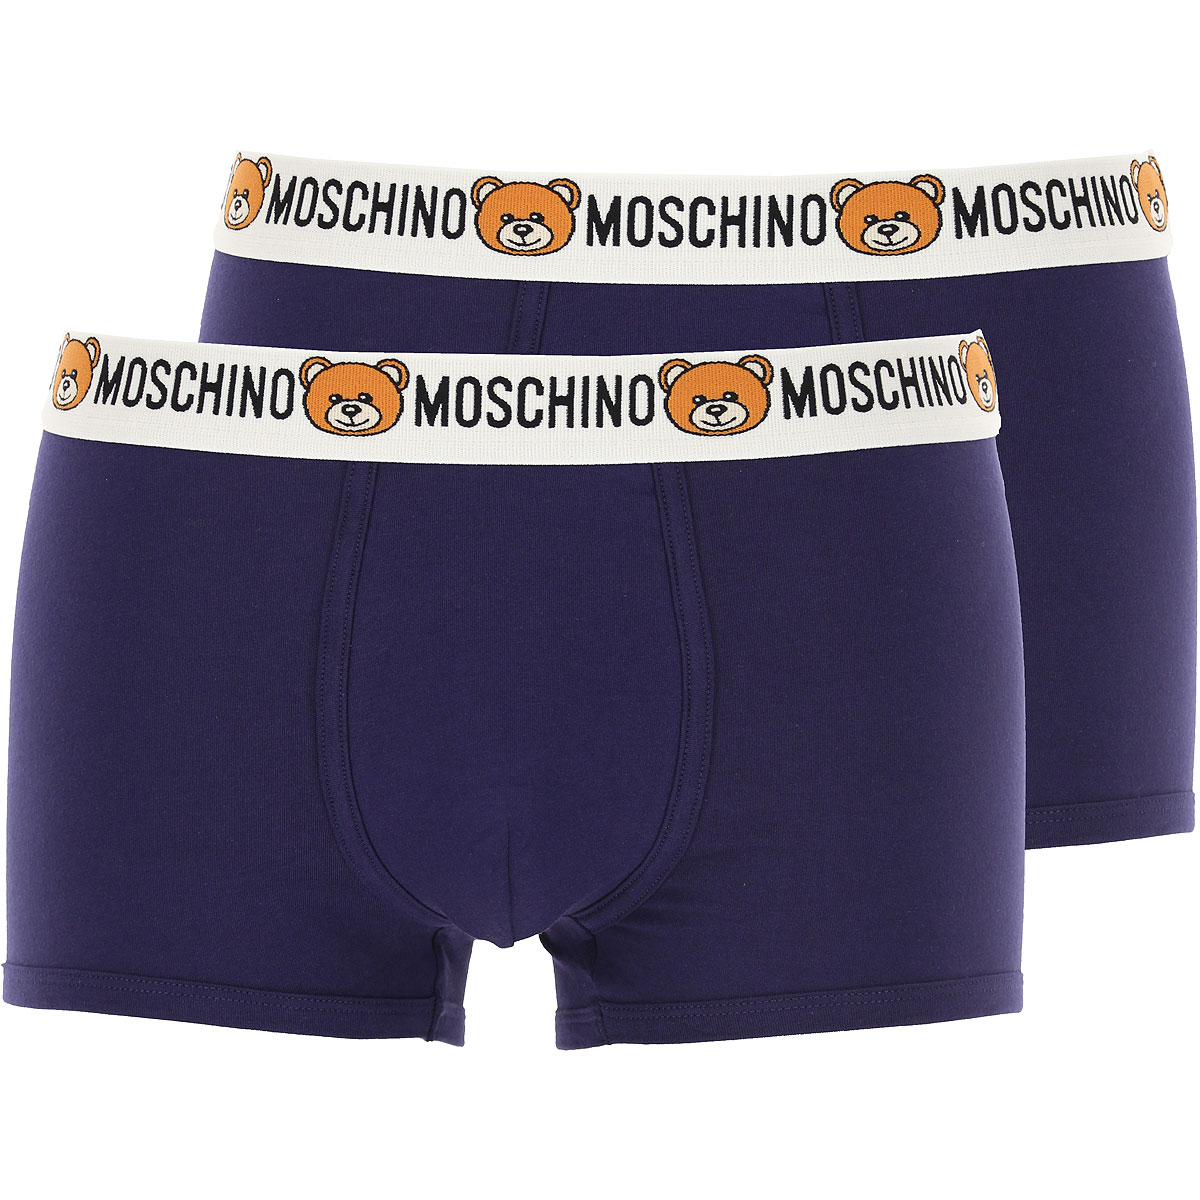 Moschino Boxer Shorts für Herren, Unterhose, Short, Boxer Günstig im Sale, 2 Pack, Blau, Baumwolle, 2017, M S XS